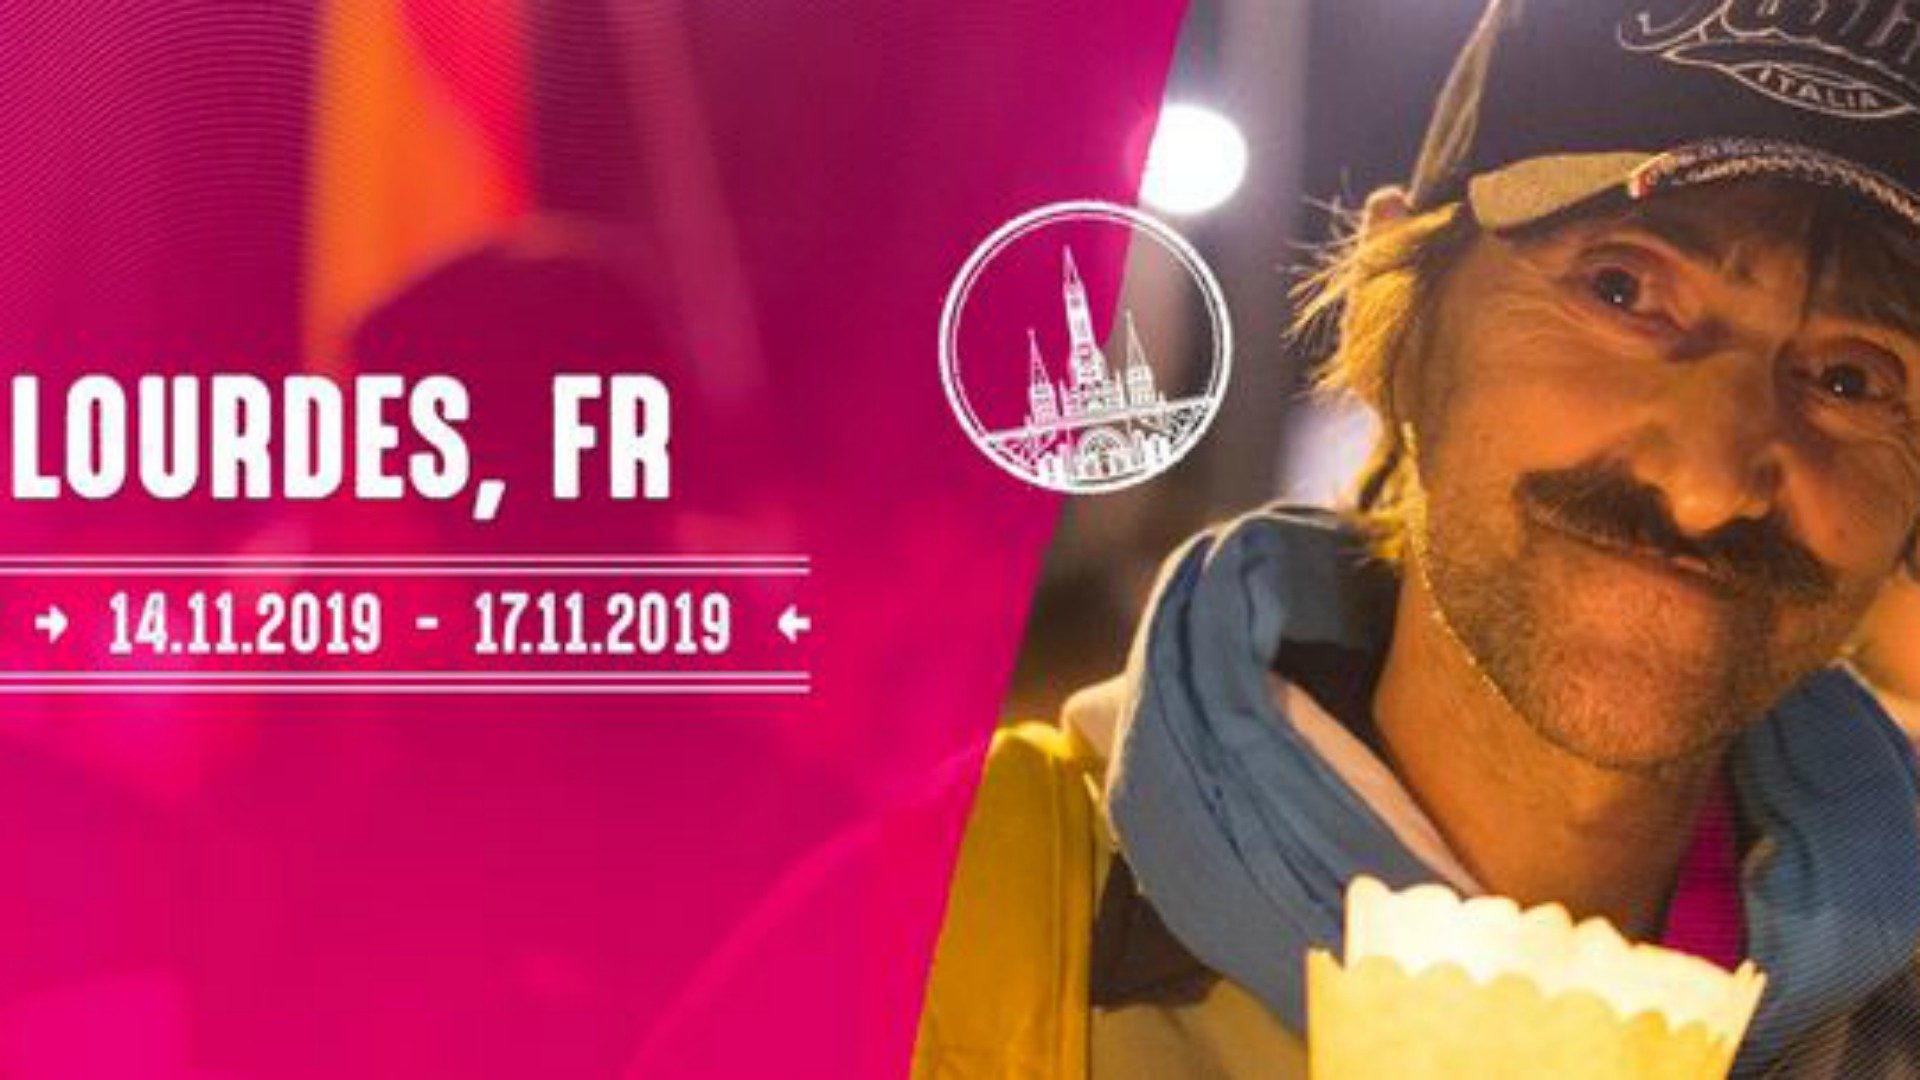 La 3e Journée mondiale des pauvres a lieu à Lourdes du 14 au 17 novembre 2019 | Fratello